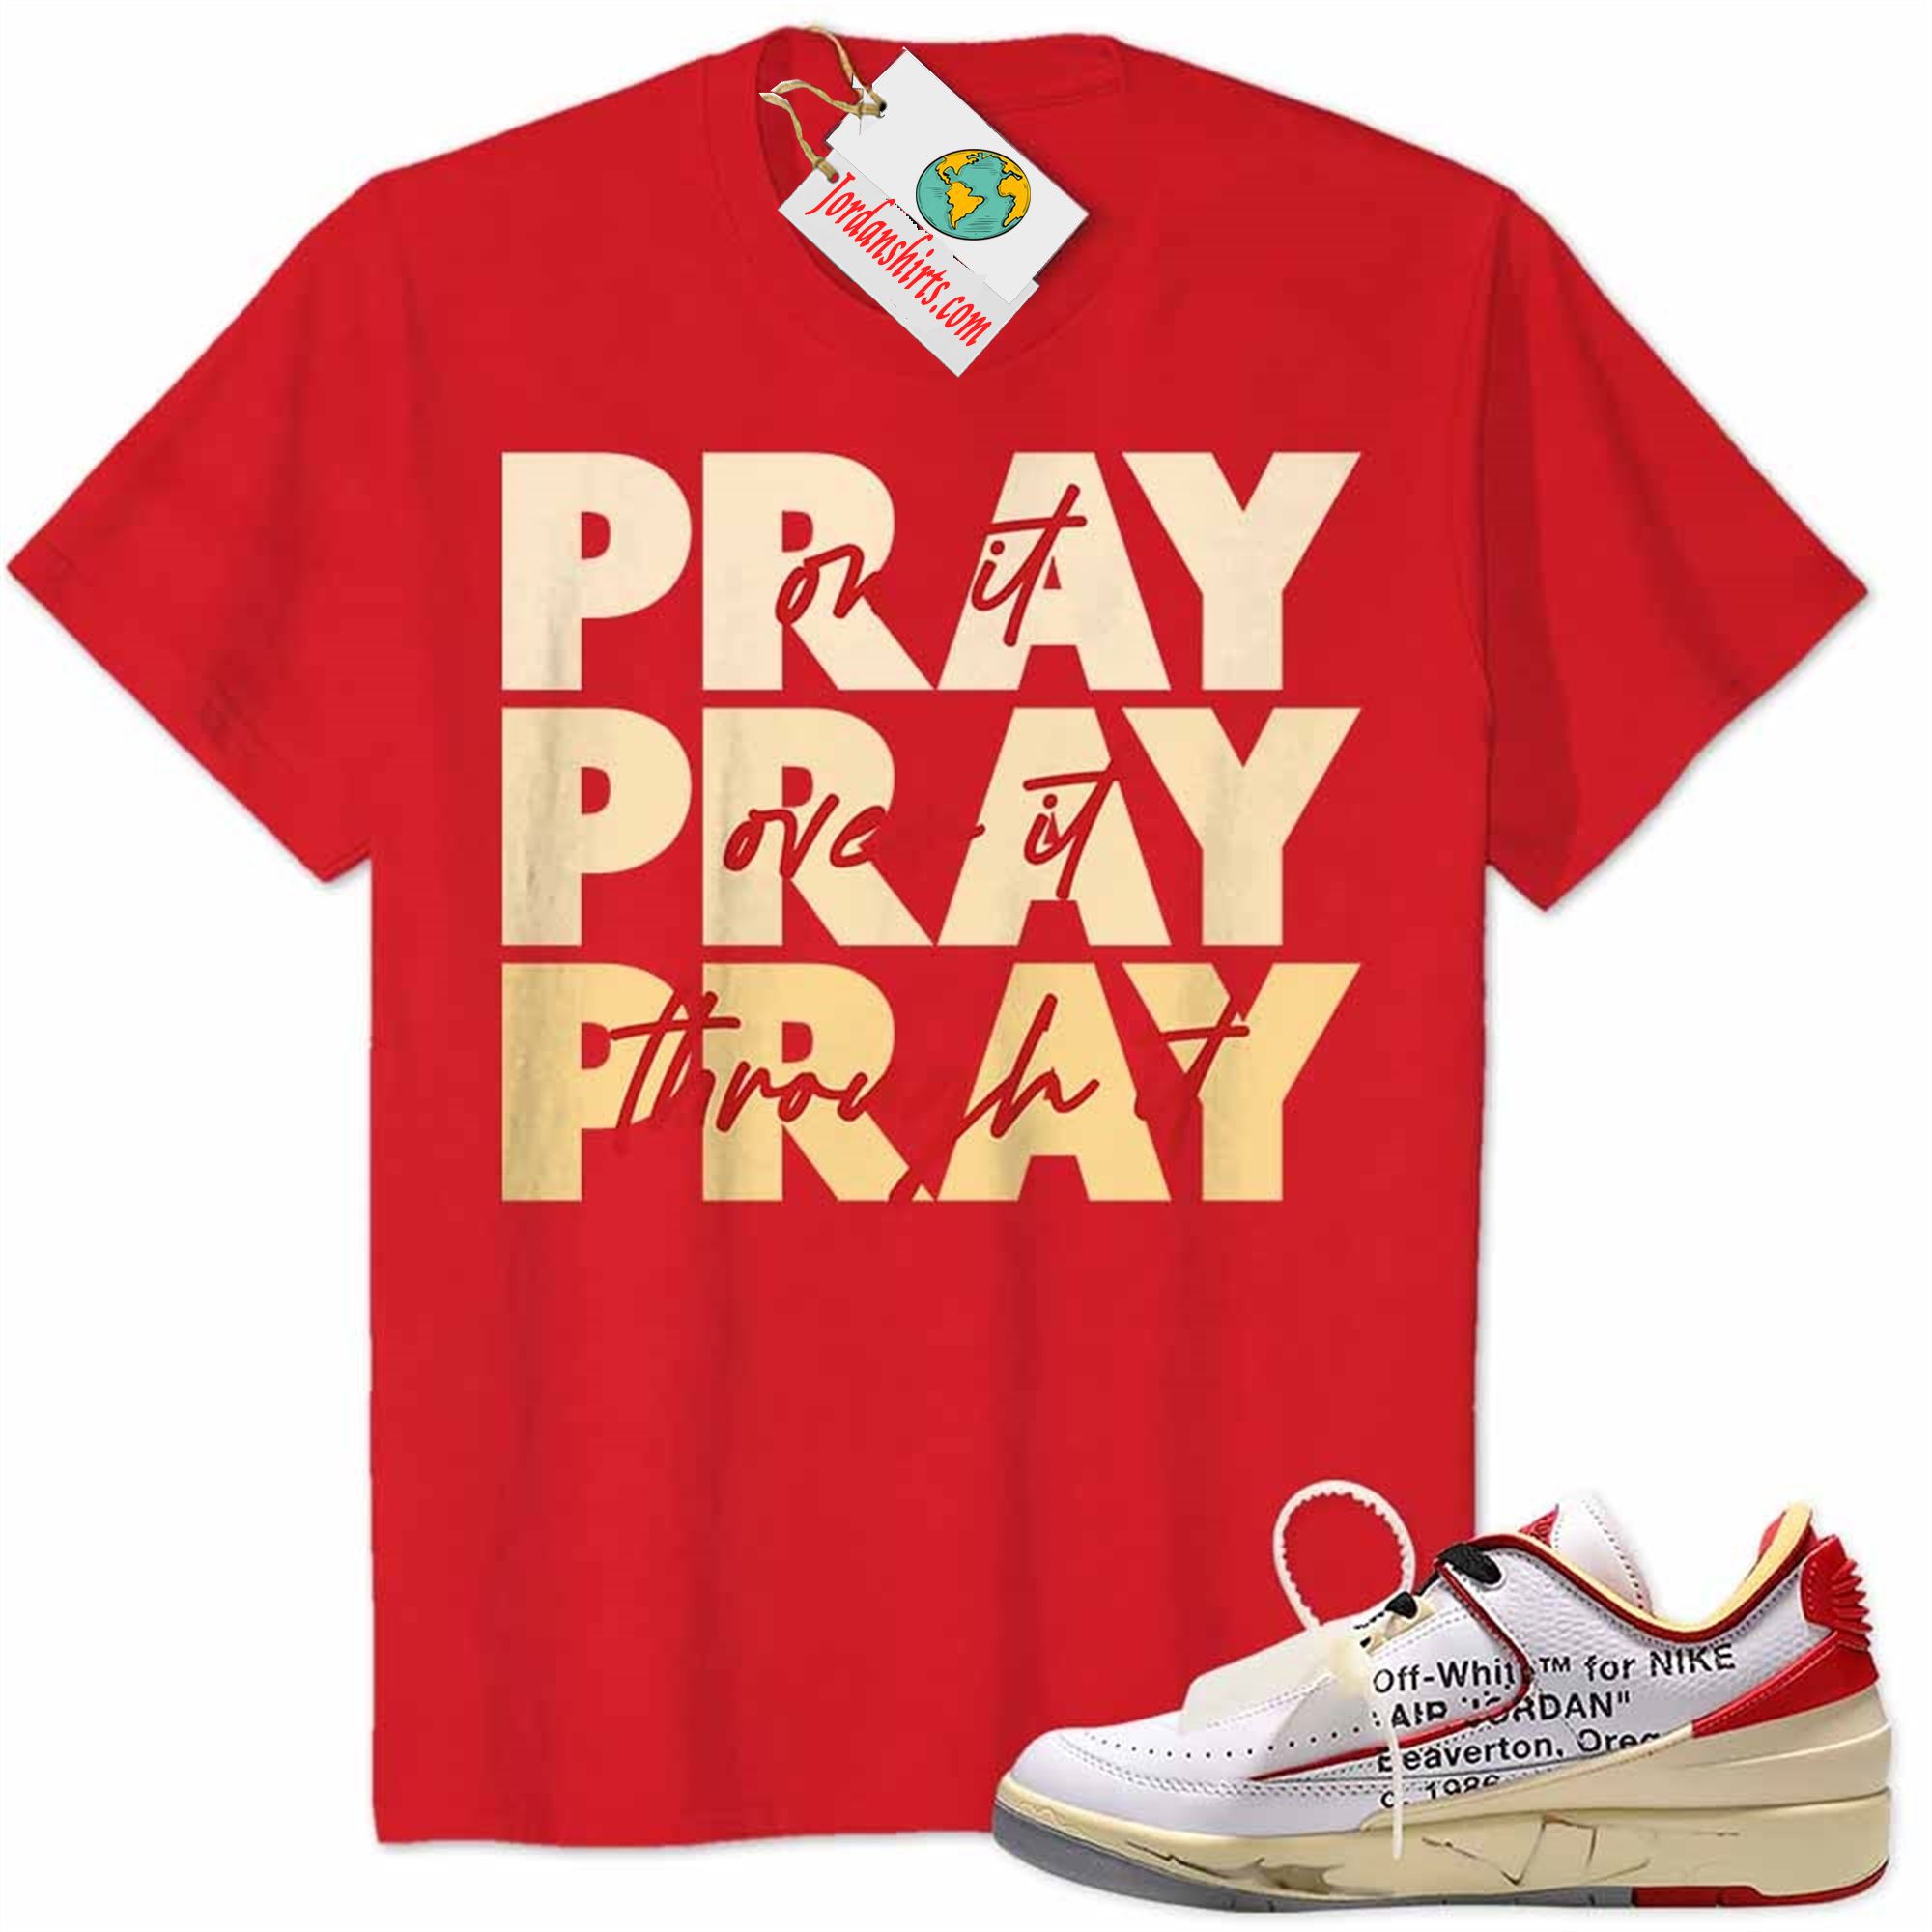 Jordan 2 Shirt, Pray On It Pray Over It Pray Through It Red Air Jordan 2 Low White Red Off-white 2s Size Up To 5xl